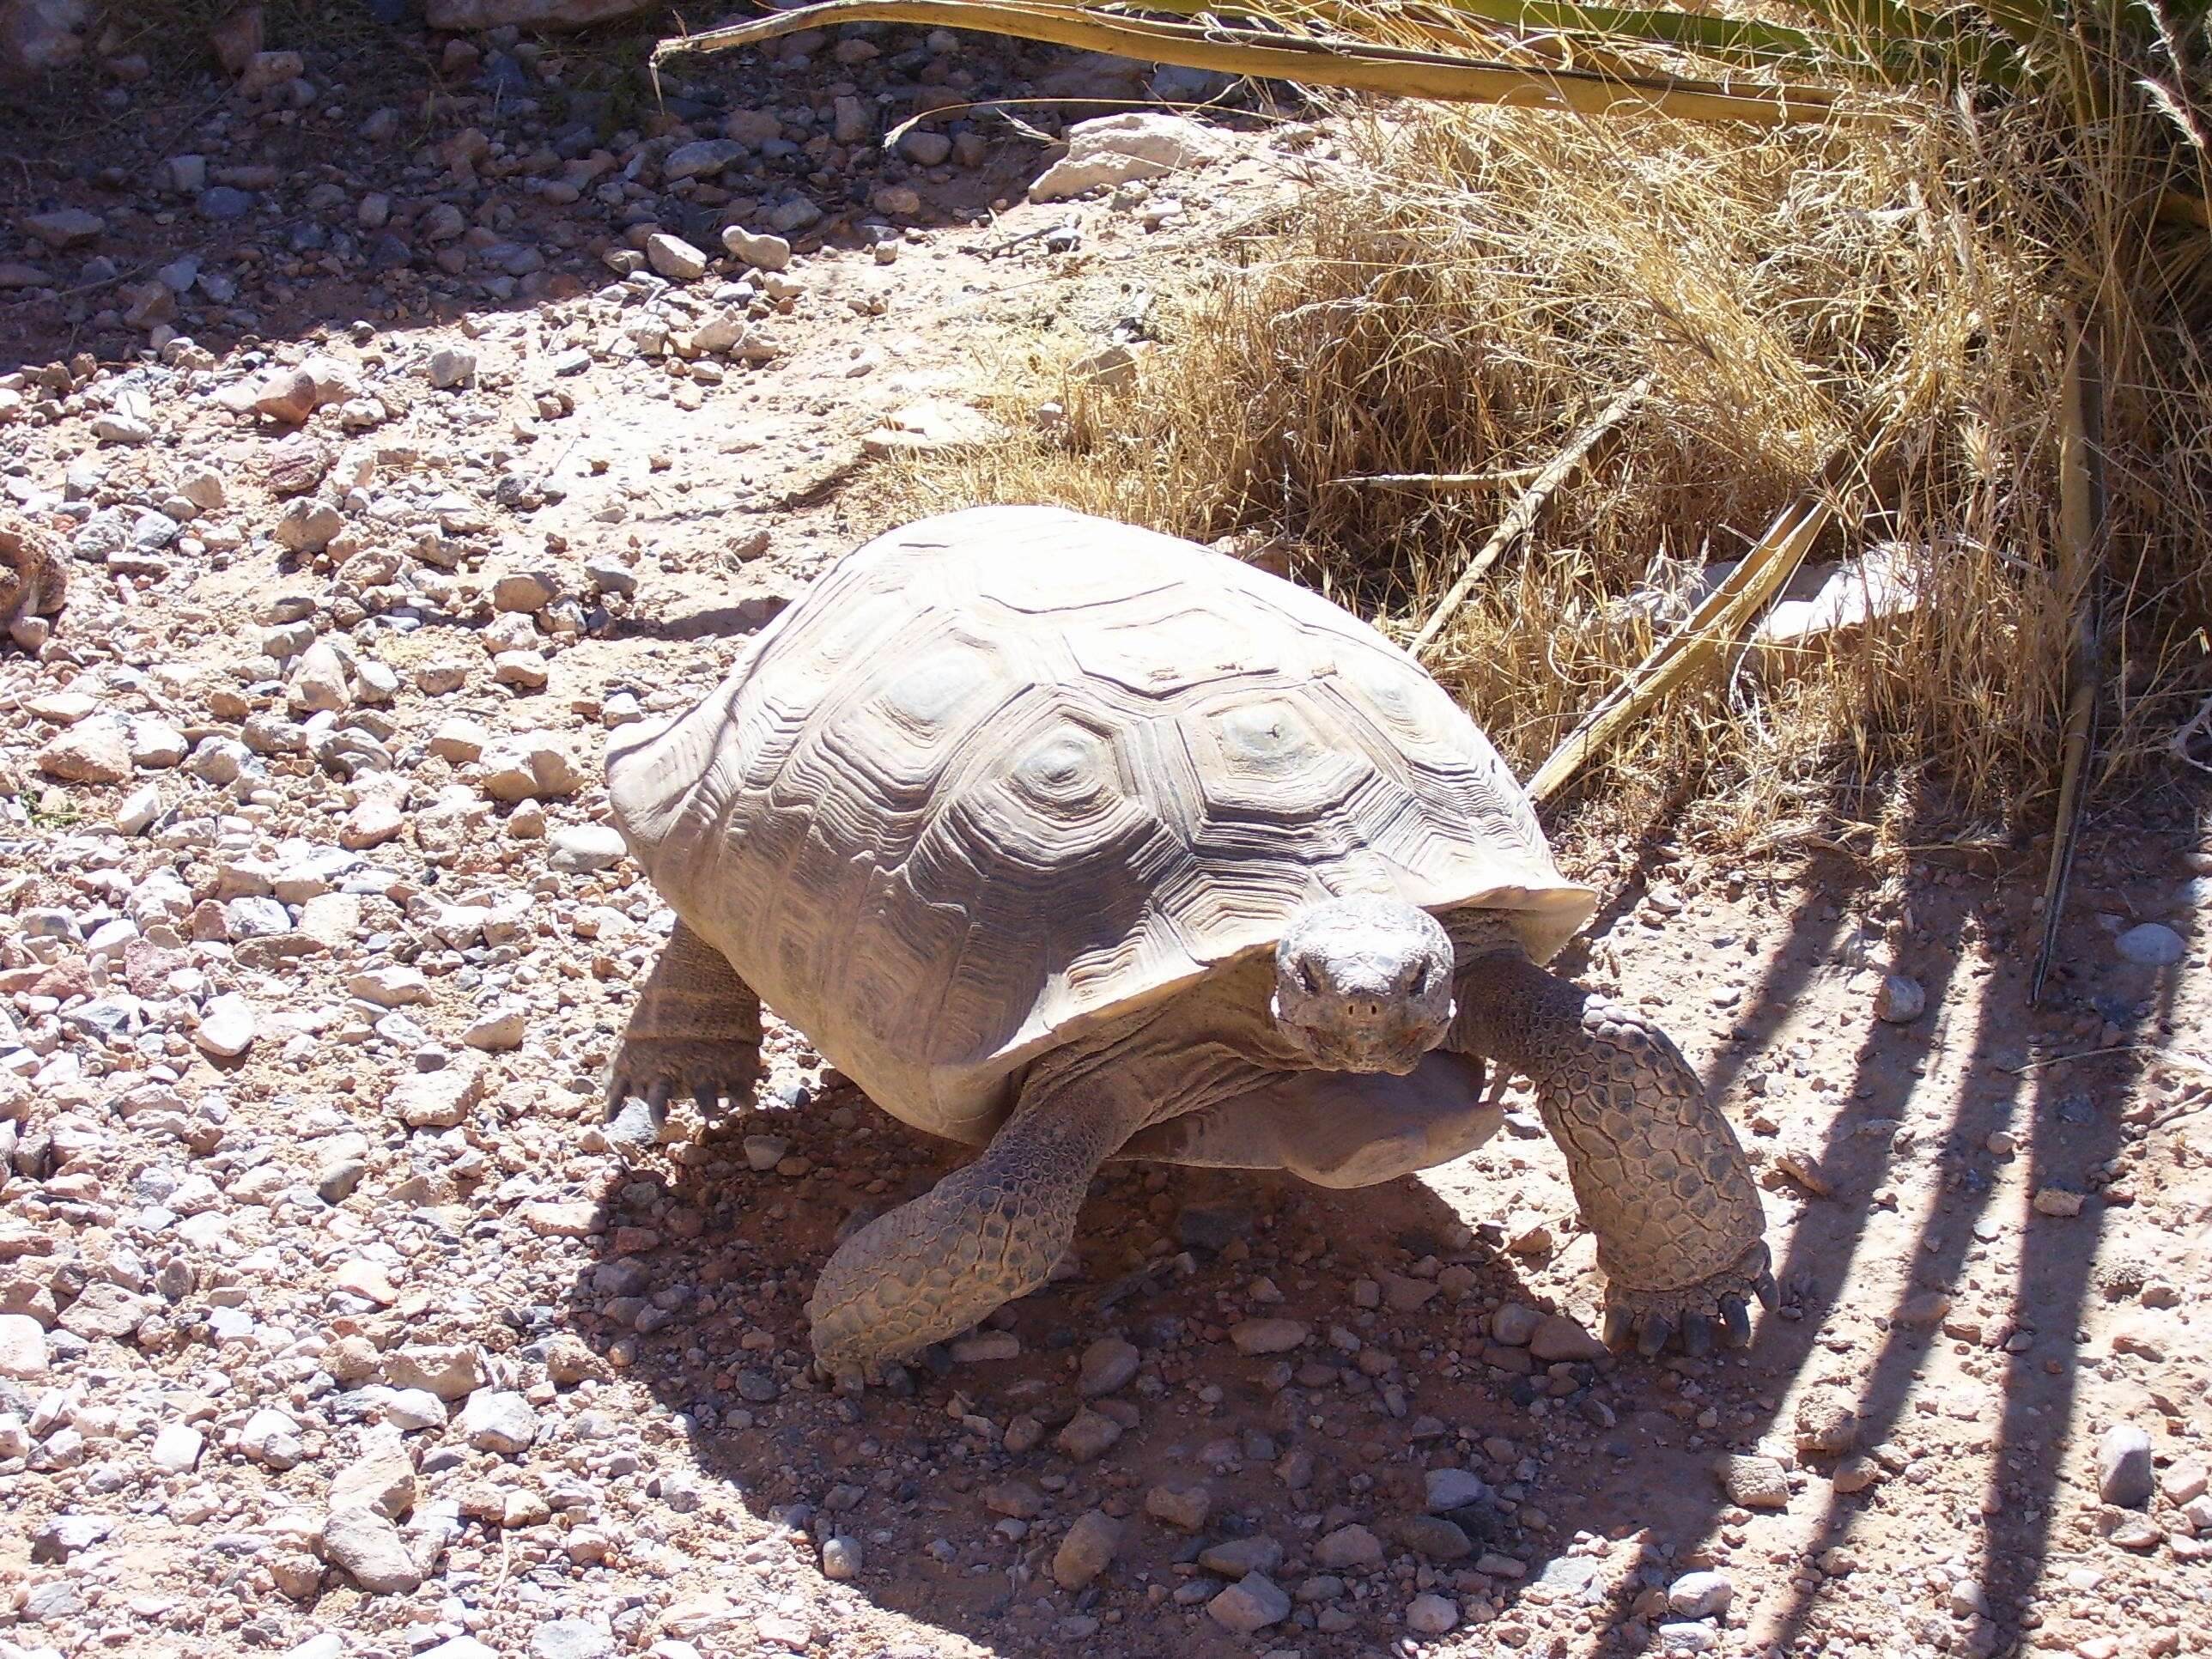 Image of desert tortoise